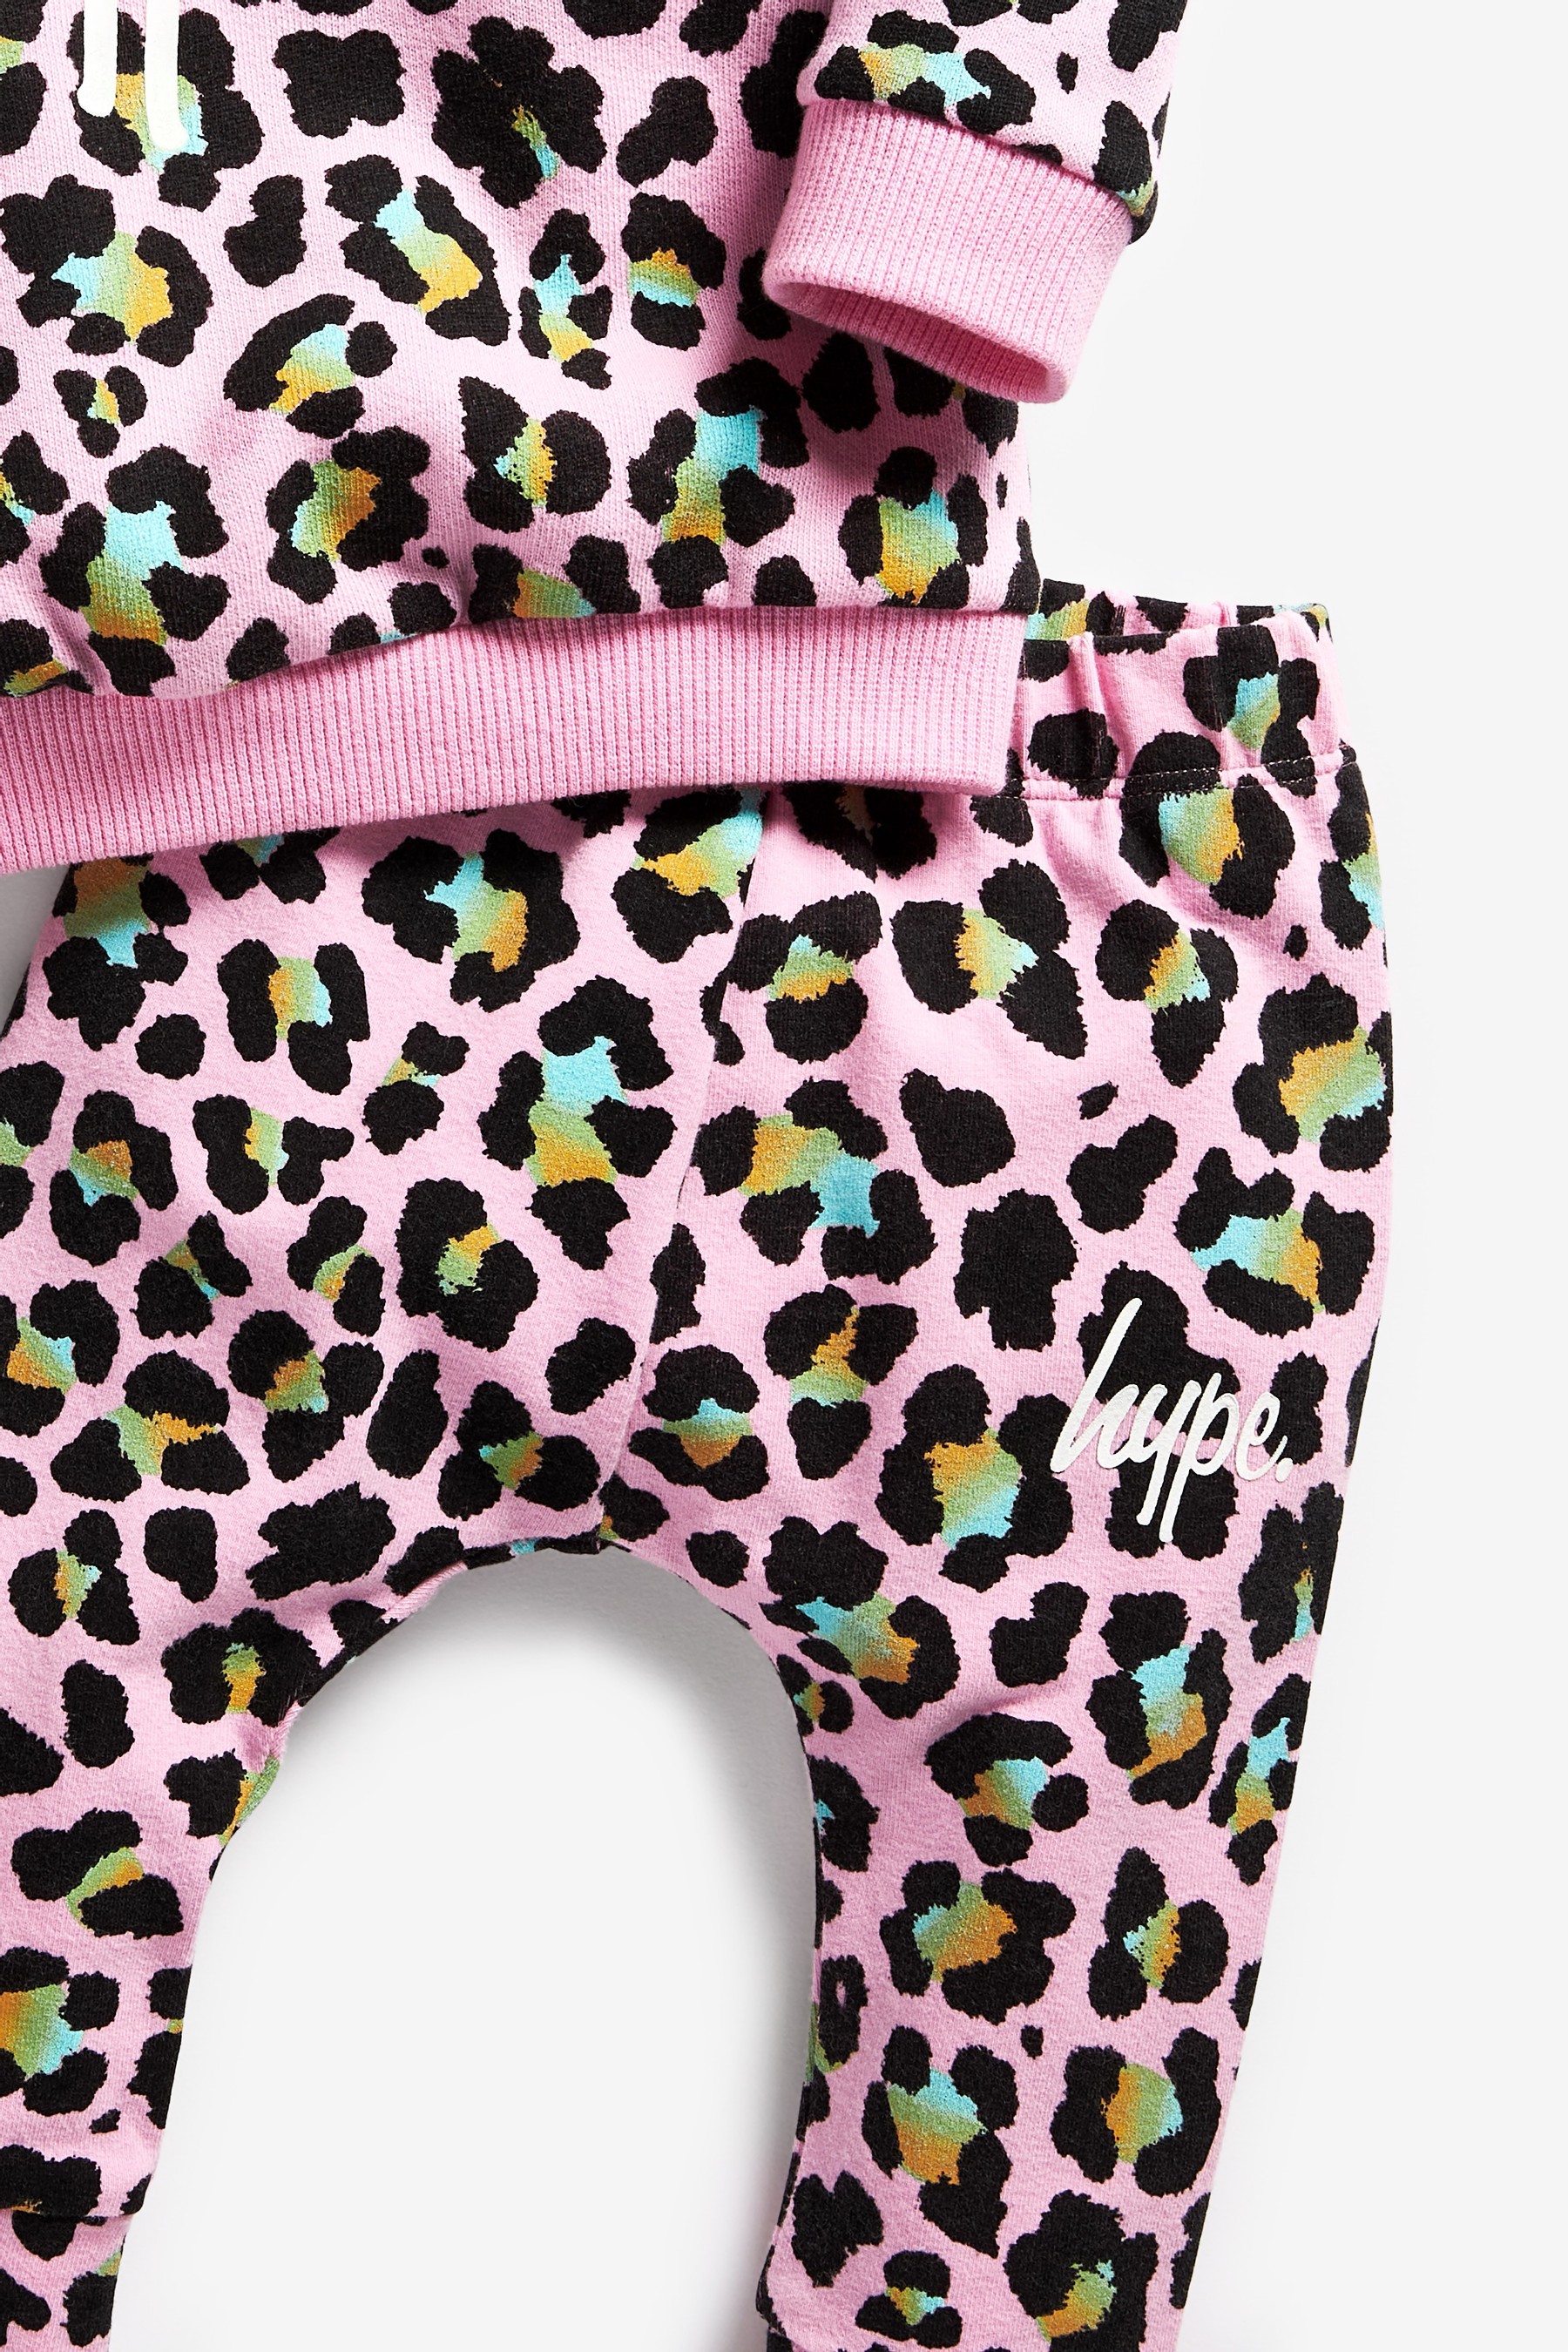 Hype. Baby Animal Print Sweatshirt And Joggers Set